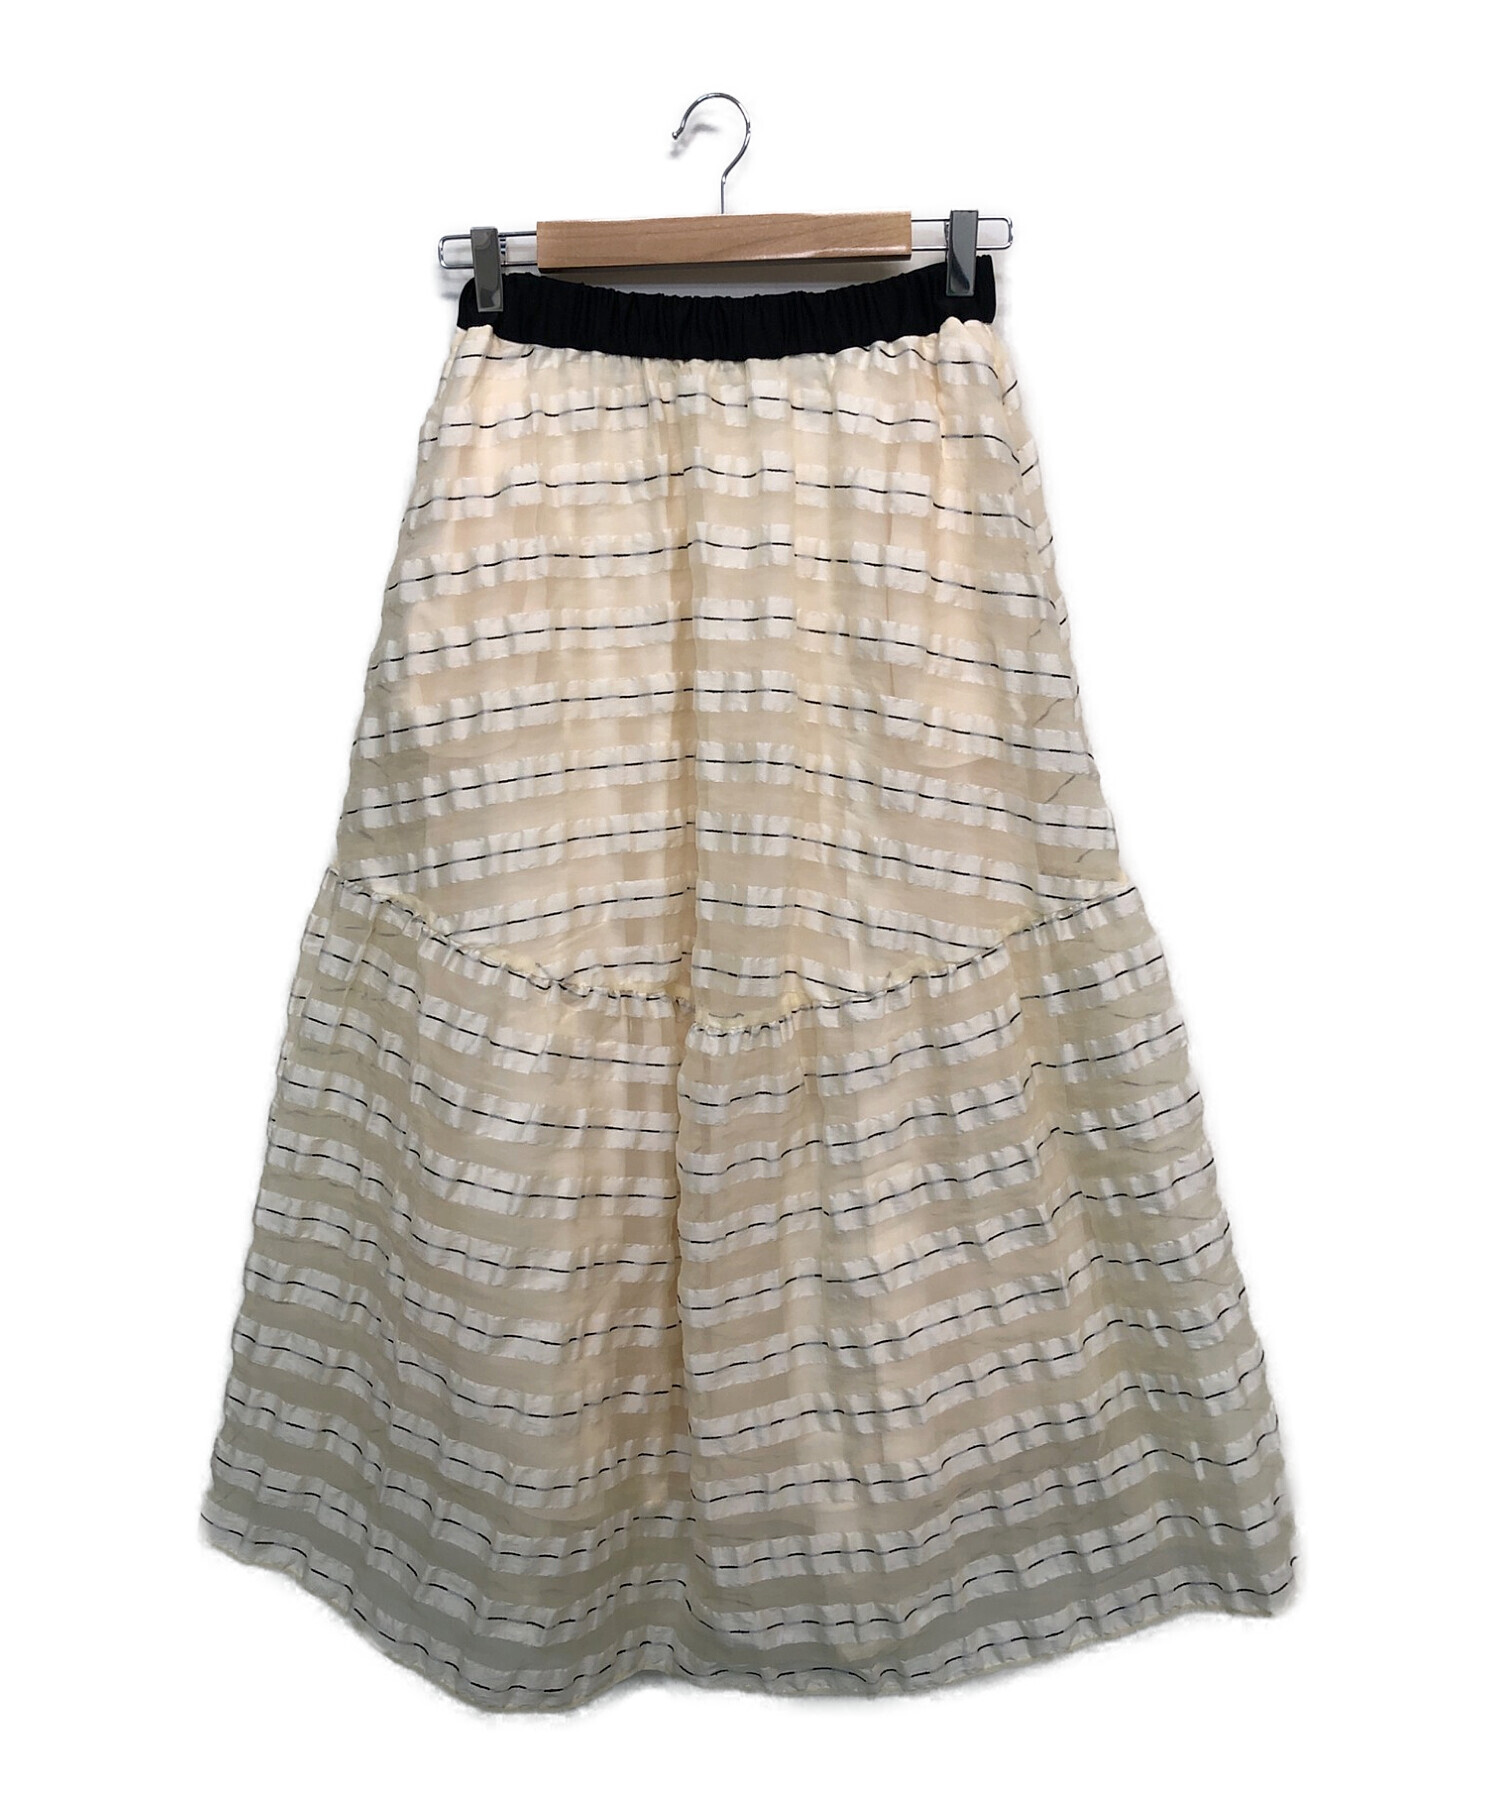 COEL (コエル) オリジナルジャガードボーダースカート アイボリー サイズ:38